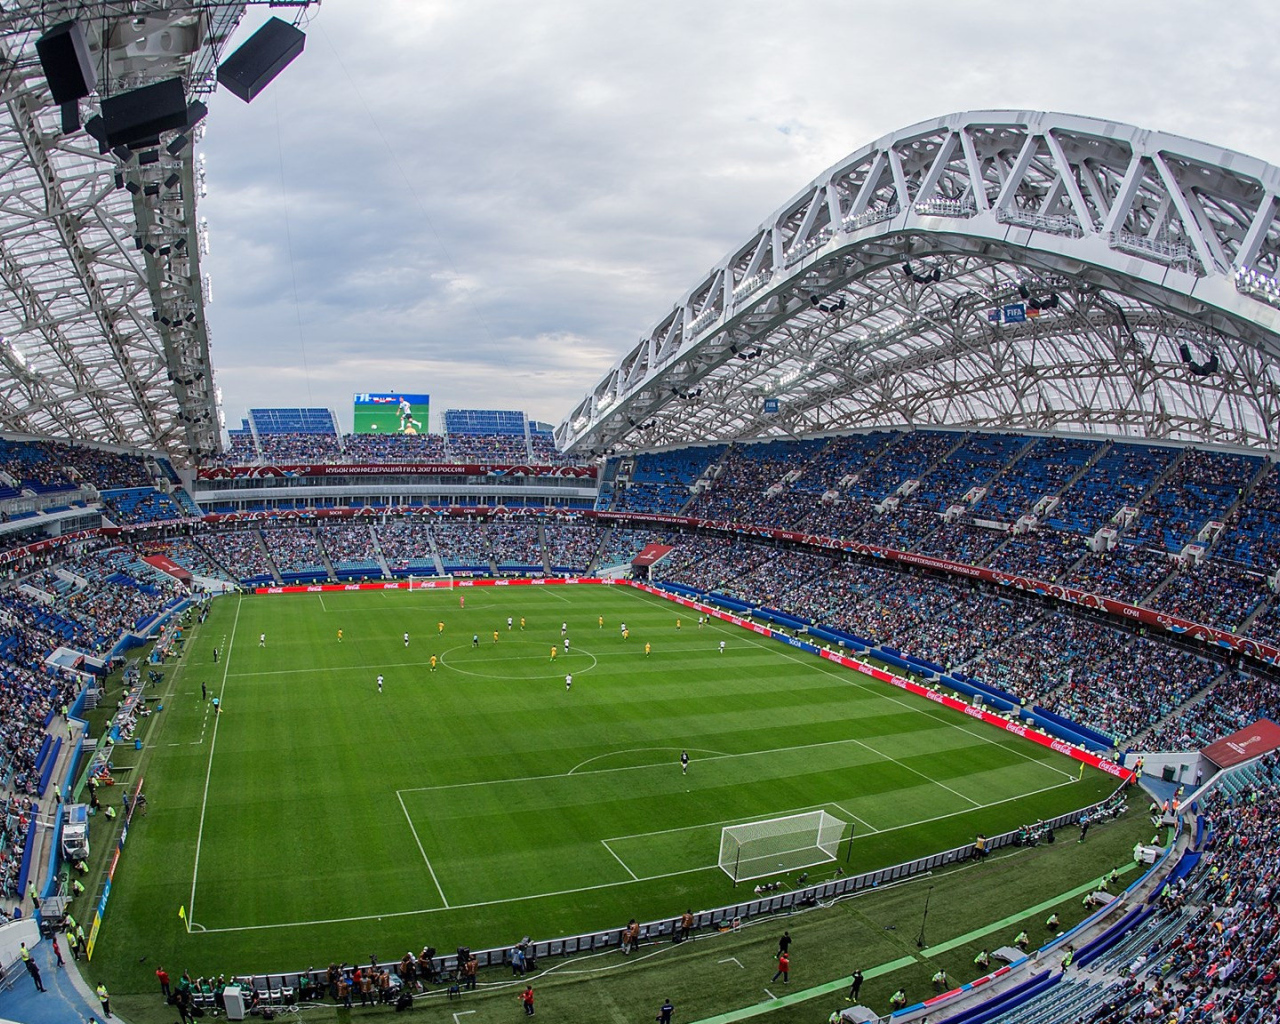 Stadium Fisch in Sochi, World Cup 2018